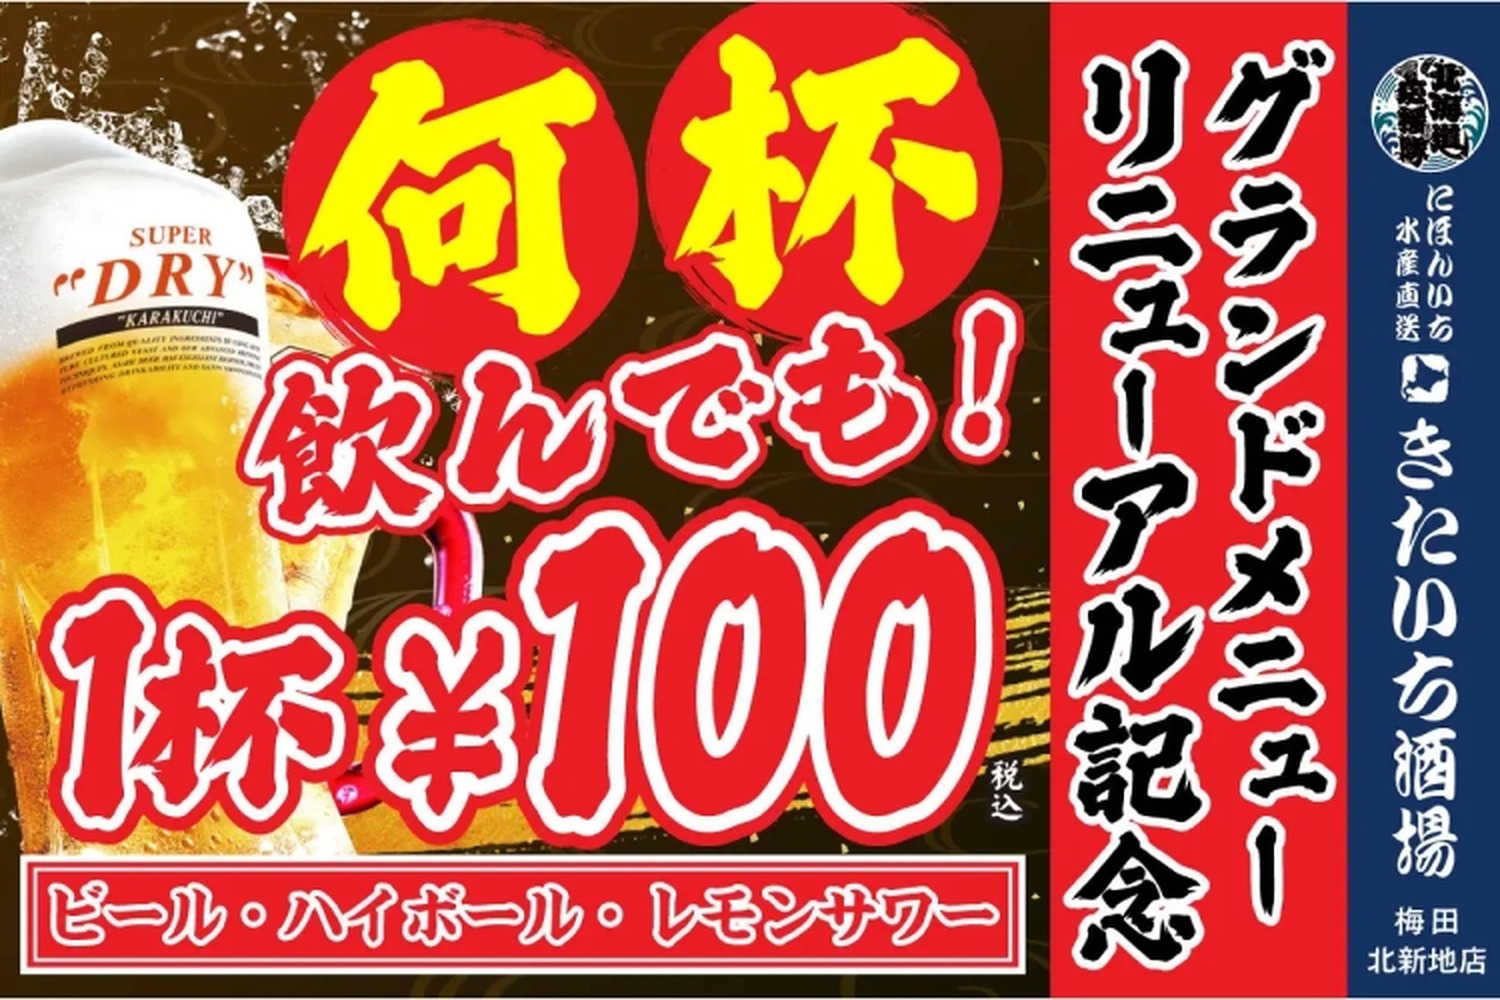 【激安】何杯飲んでもビール100円！人気酒場のリニューアル記念キャンペーンがアツイ！